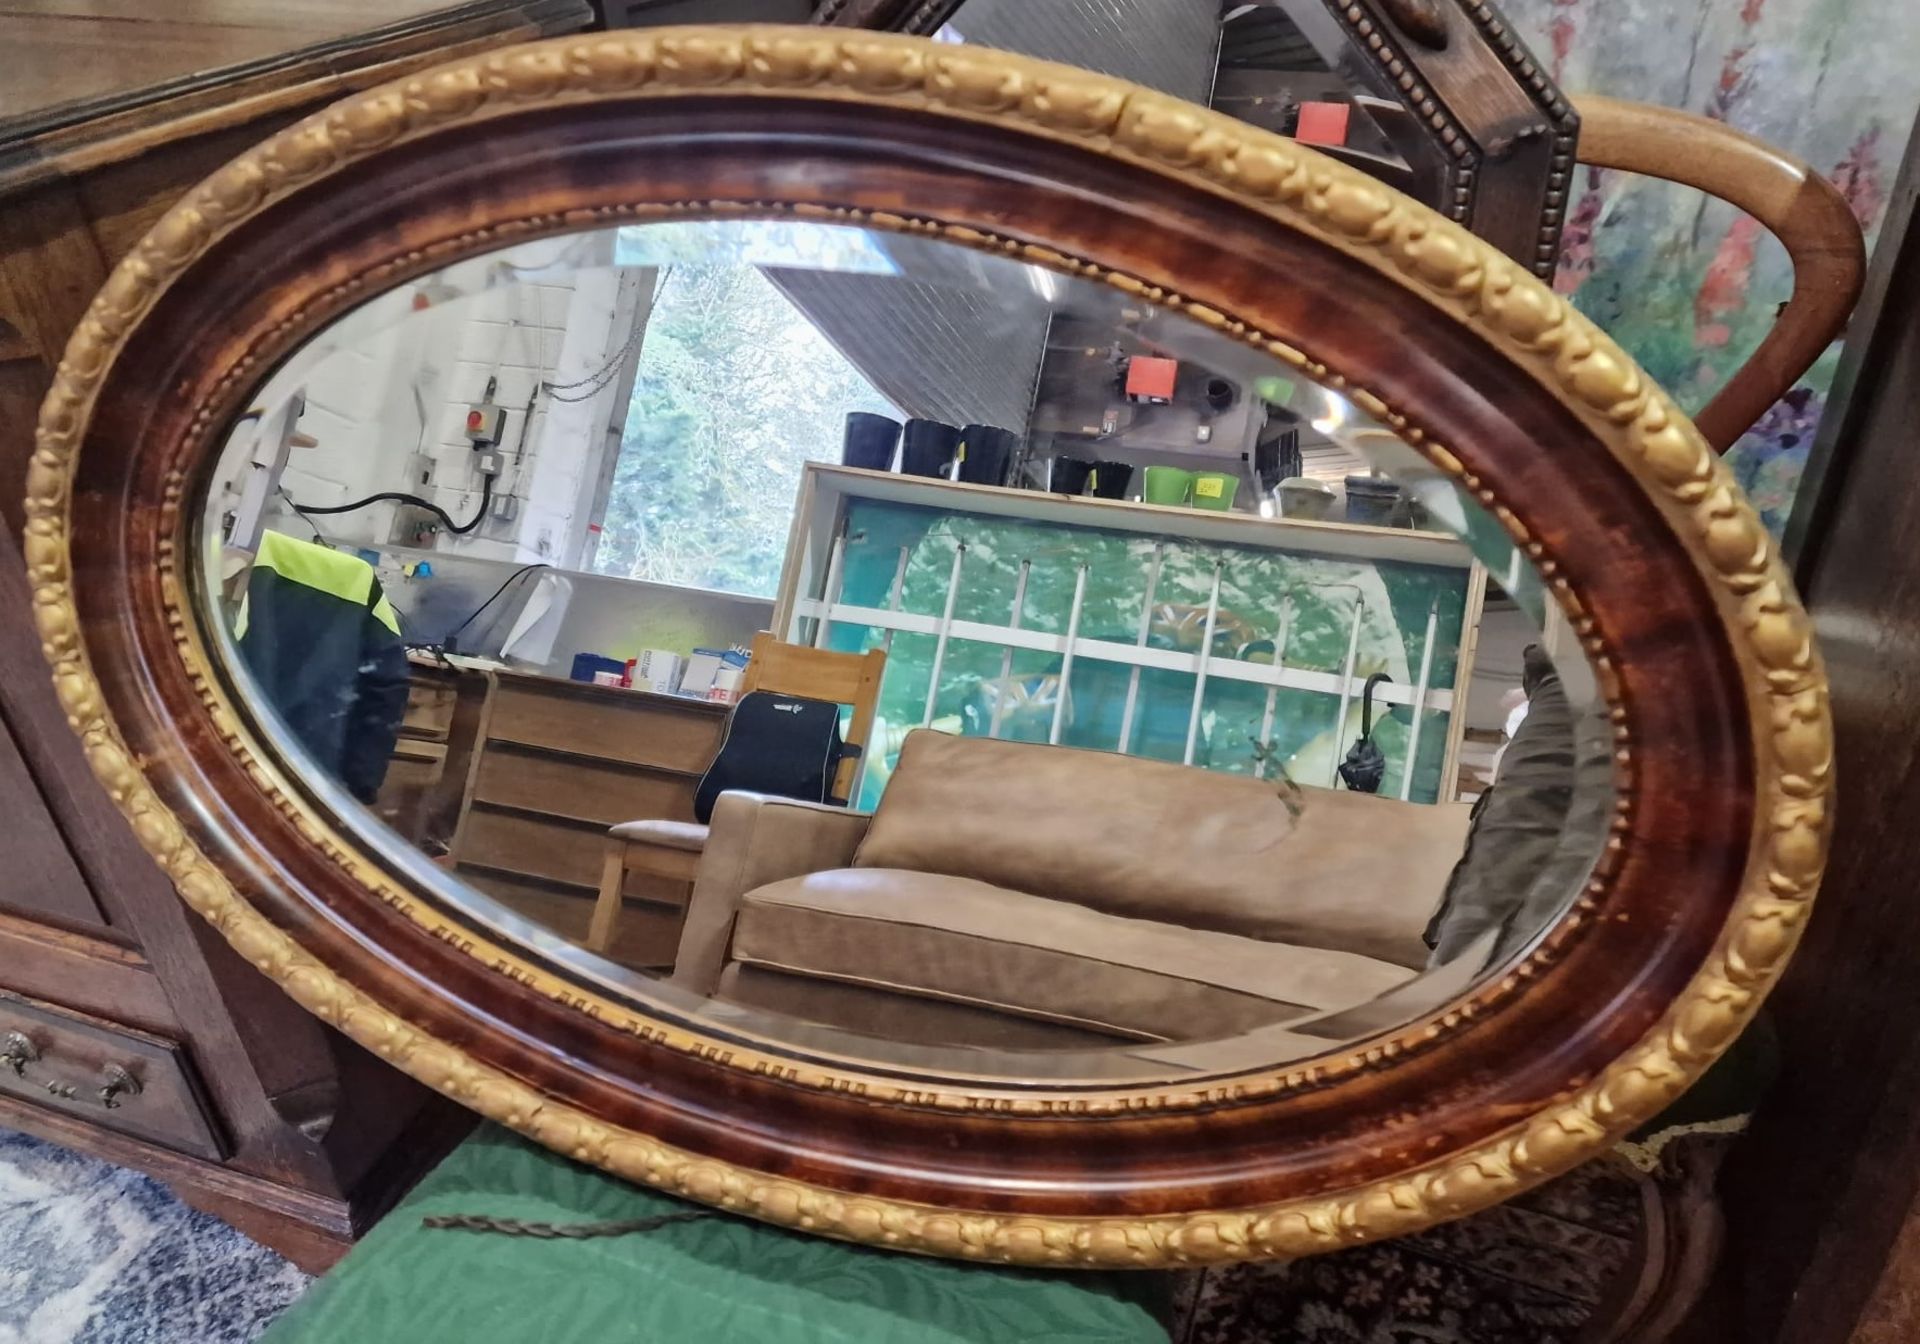 A Regency Style Oval Wall Mirror 81 x 53cm